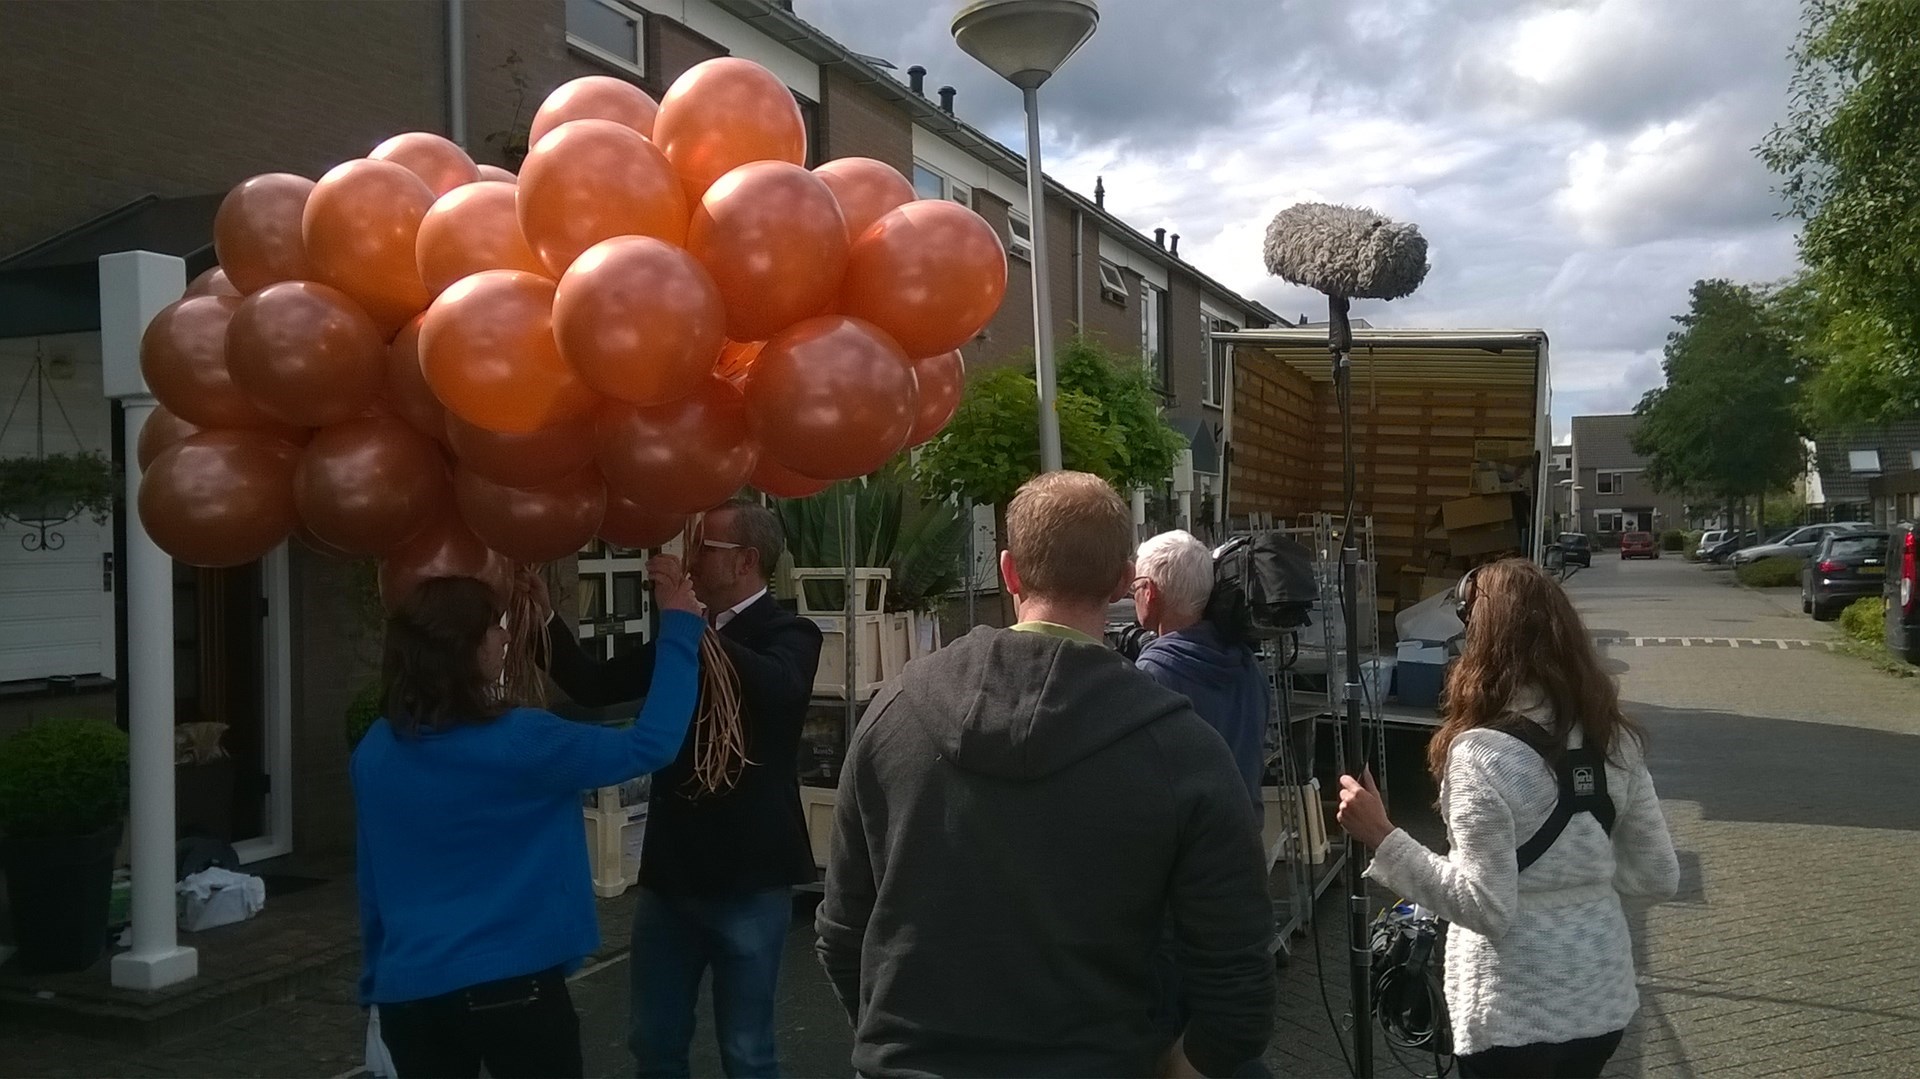 helium ballonnen voor televisie programma als decoratie